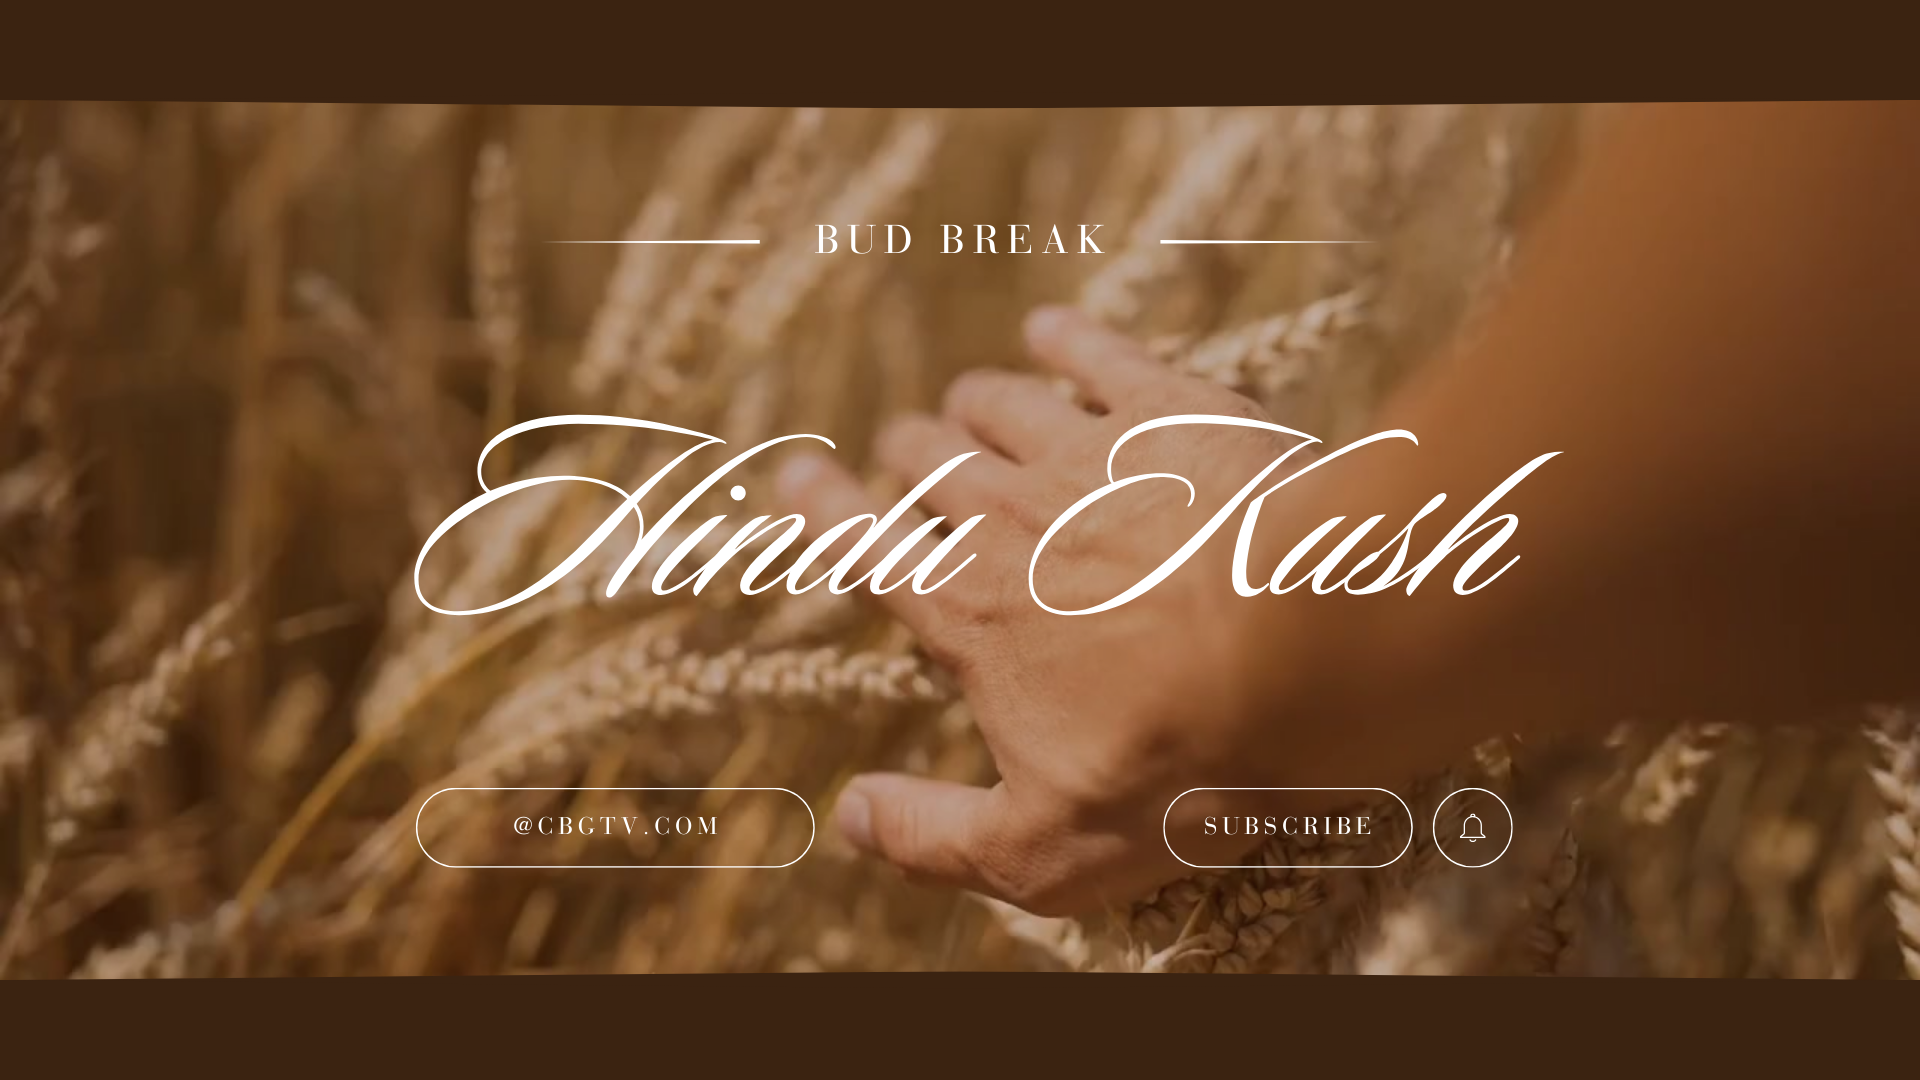 Bud Break with Hindu Kush